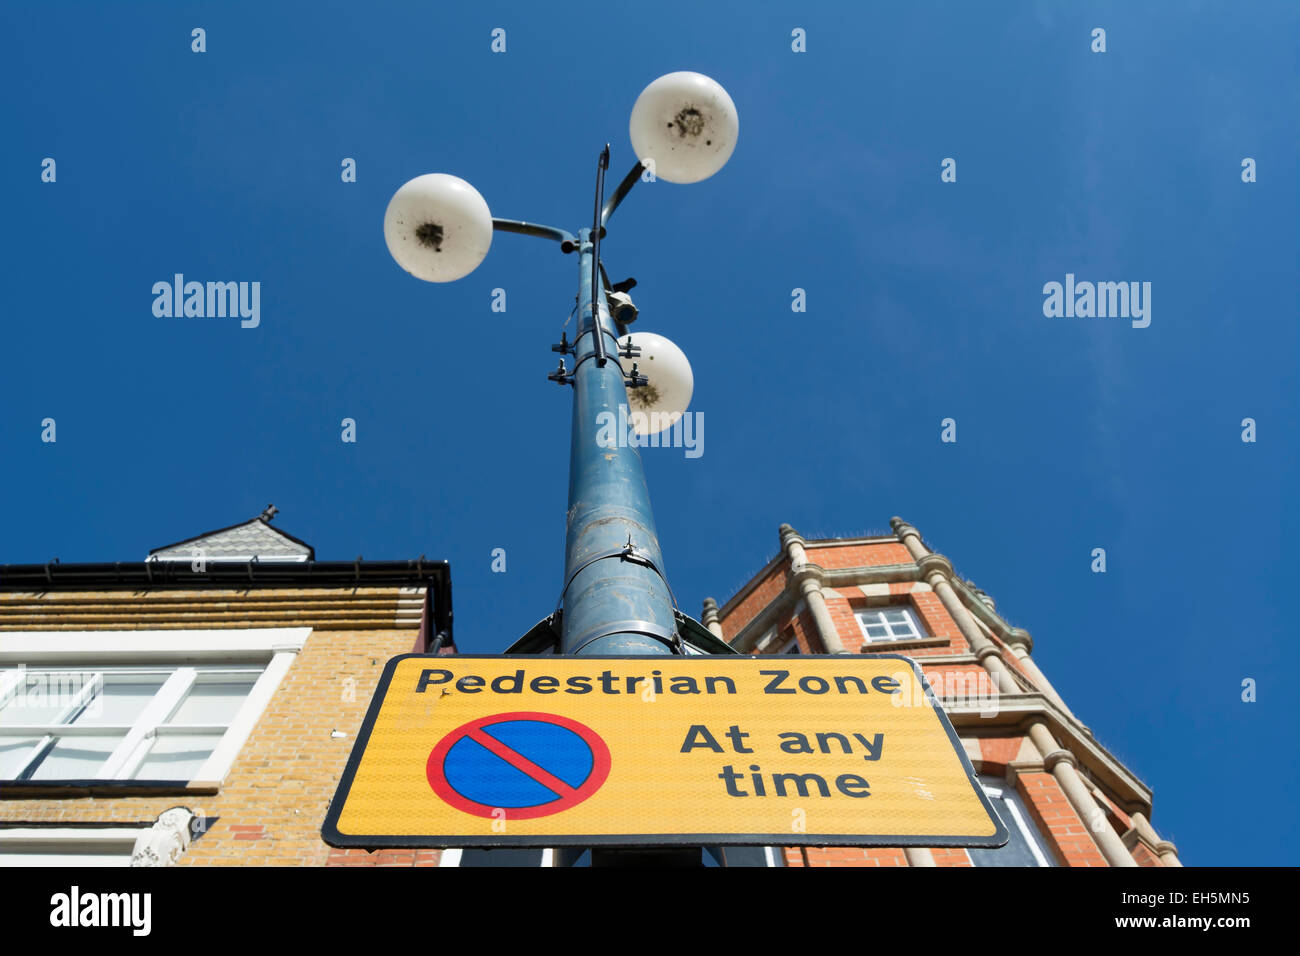 La signalisation routière indiquant une zone piétonne et aucun trafic en attente à tout moment, Twickenham, Middlesex, Angleterre Banque D'Images